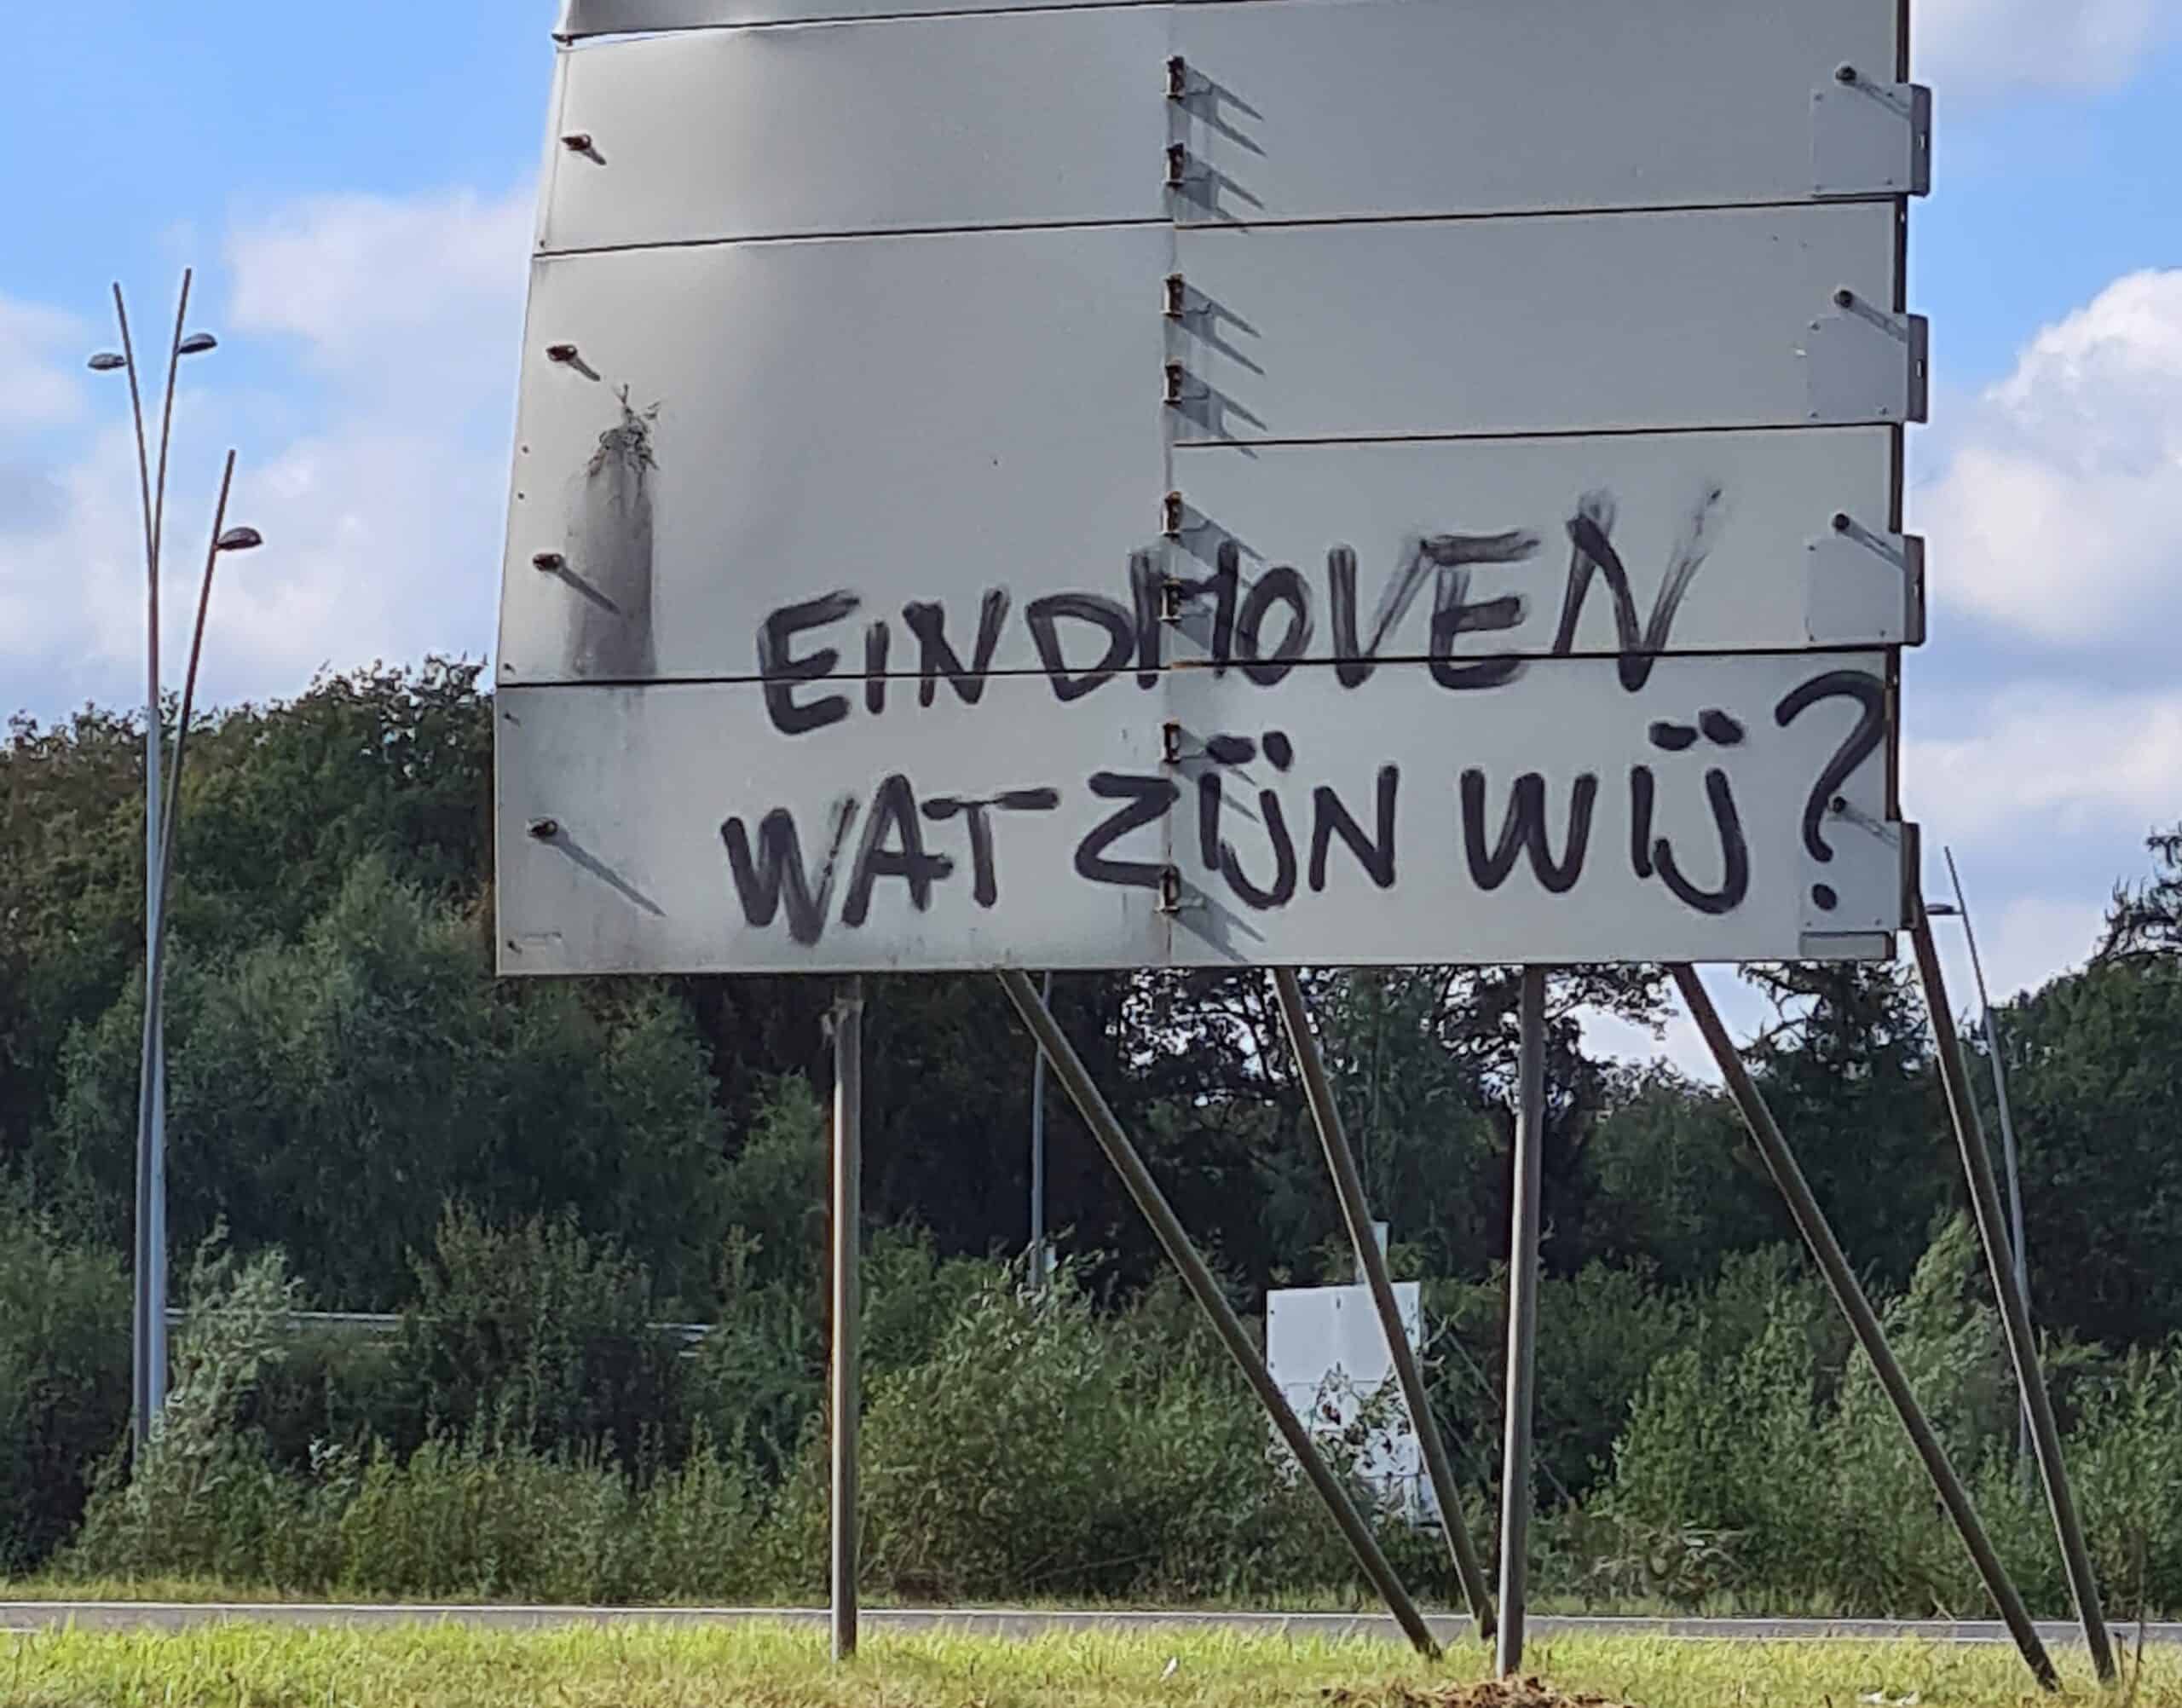 Eindhoven, wat zijn wij?